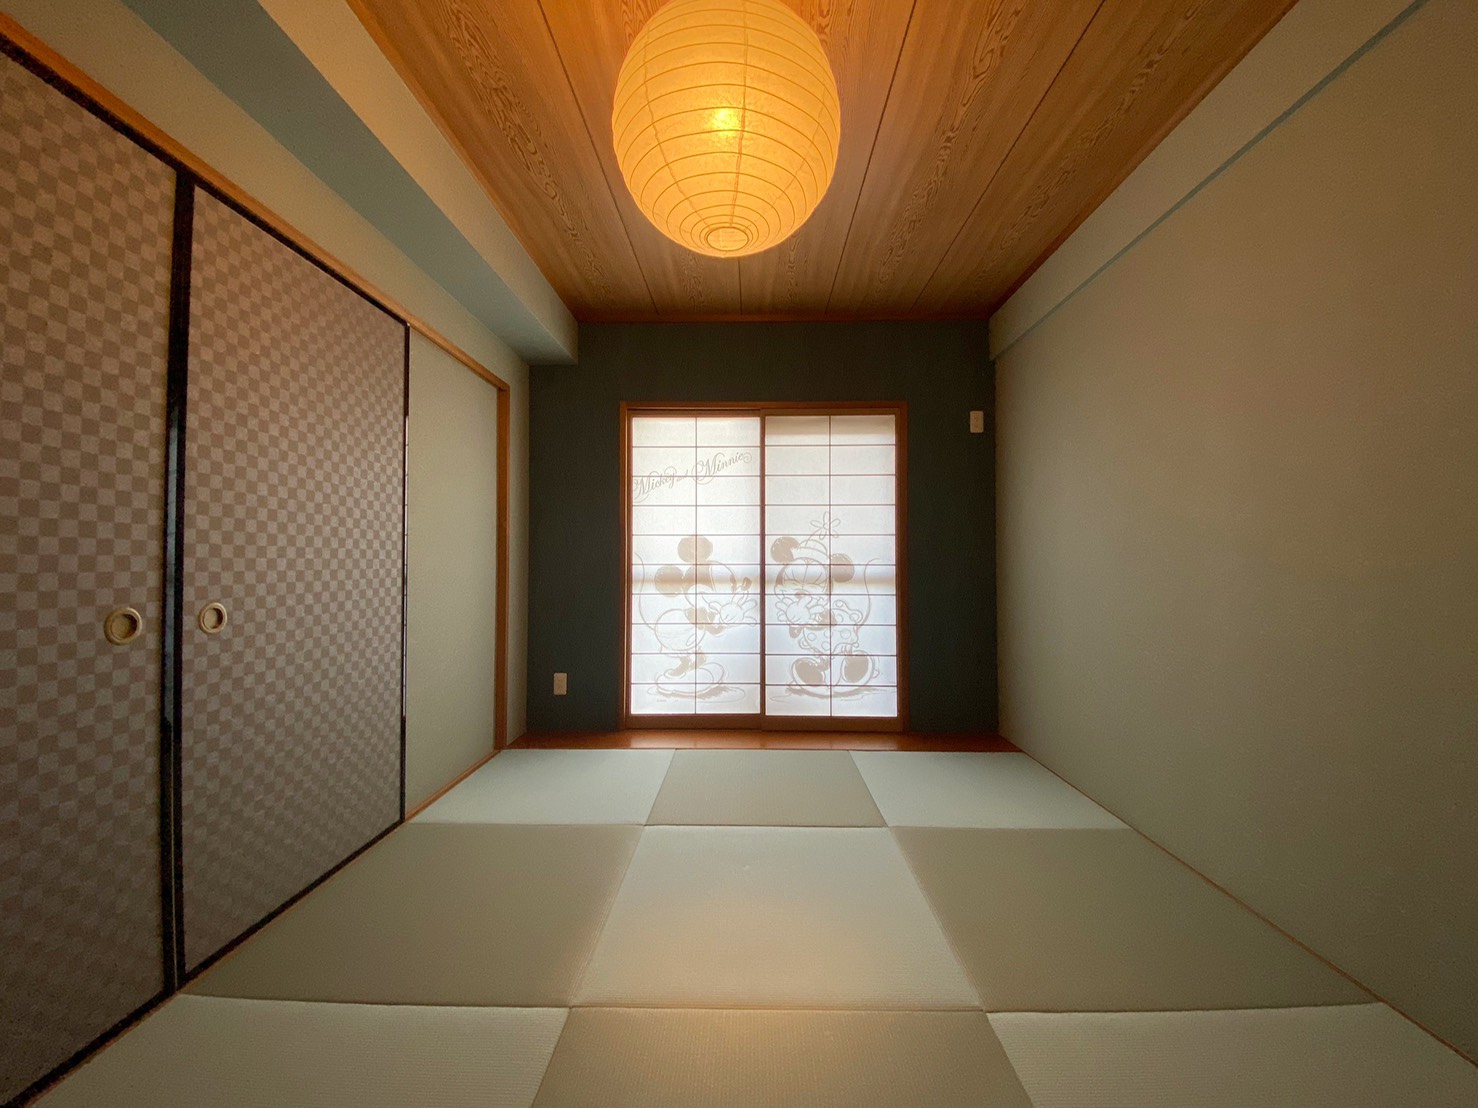 中古マンションリフォーム × 温かみのある和室|愛知県緑区のマンションリフォームを行いました。和室の畳の貼替え・壁紙や襖、木枠の交換をしています。 パートナーホーム施工実績|パートナーホーム